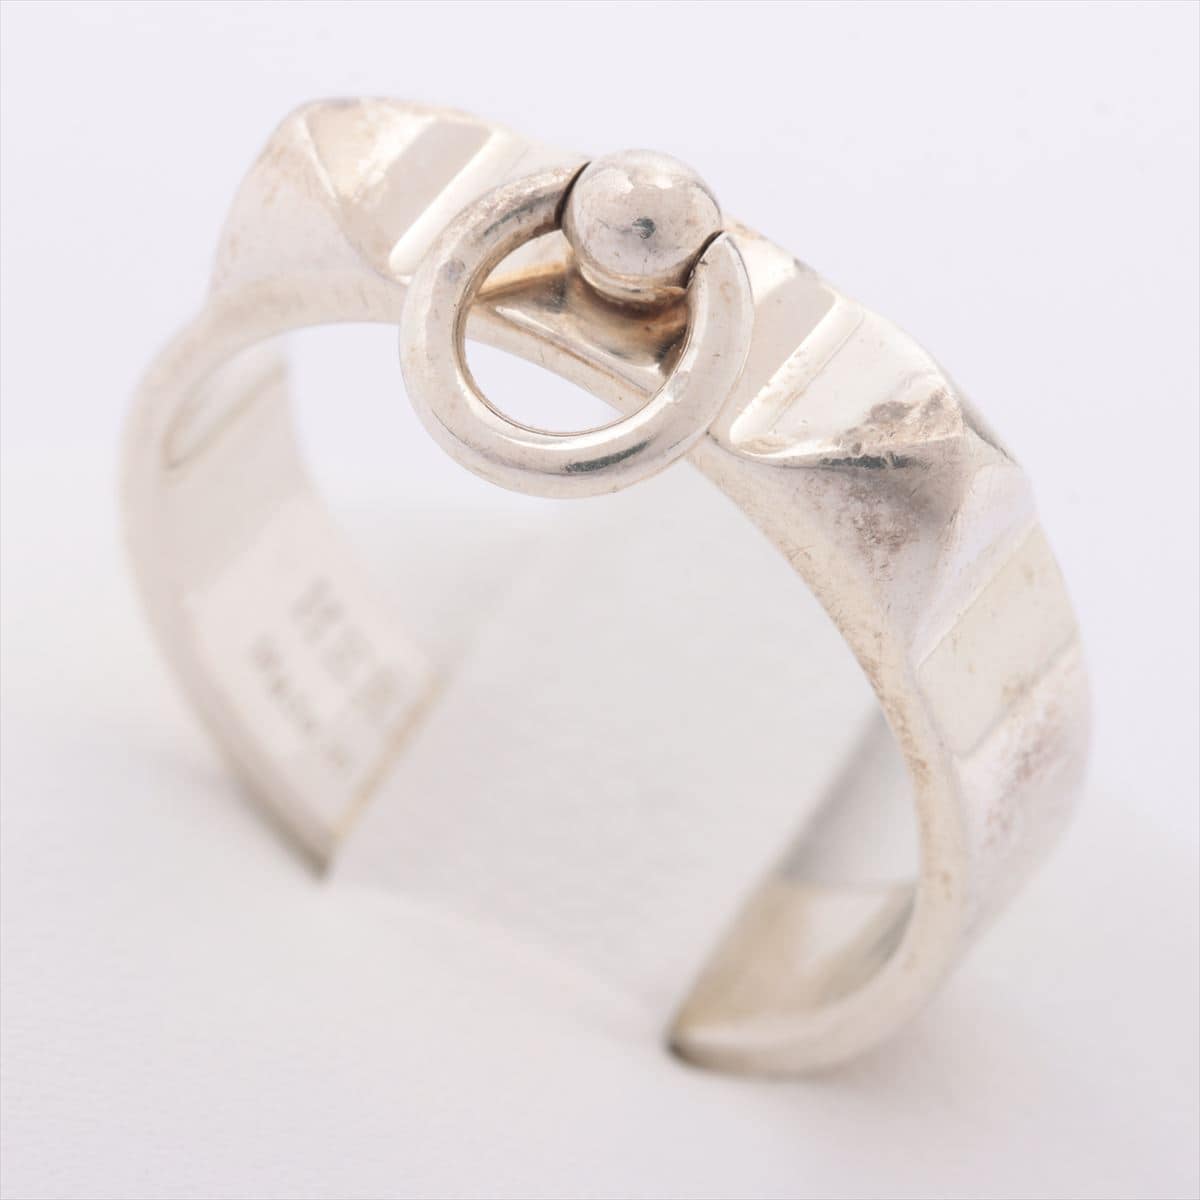 Hermès Collier de Chien rings 925 4.5g Silver